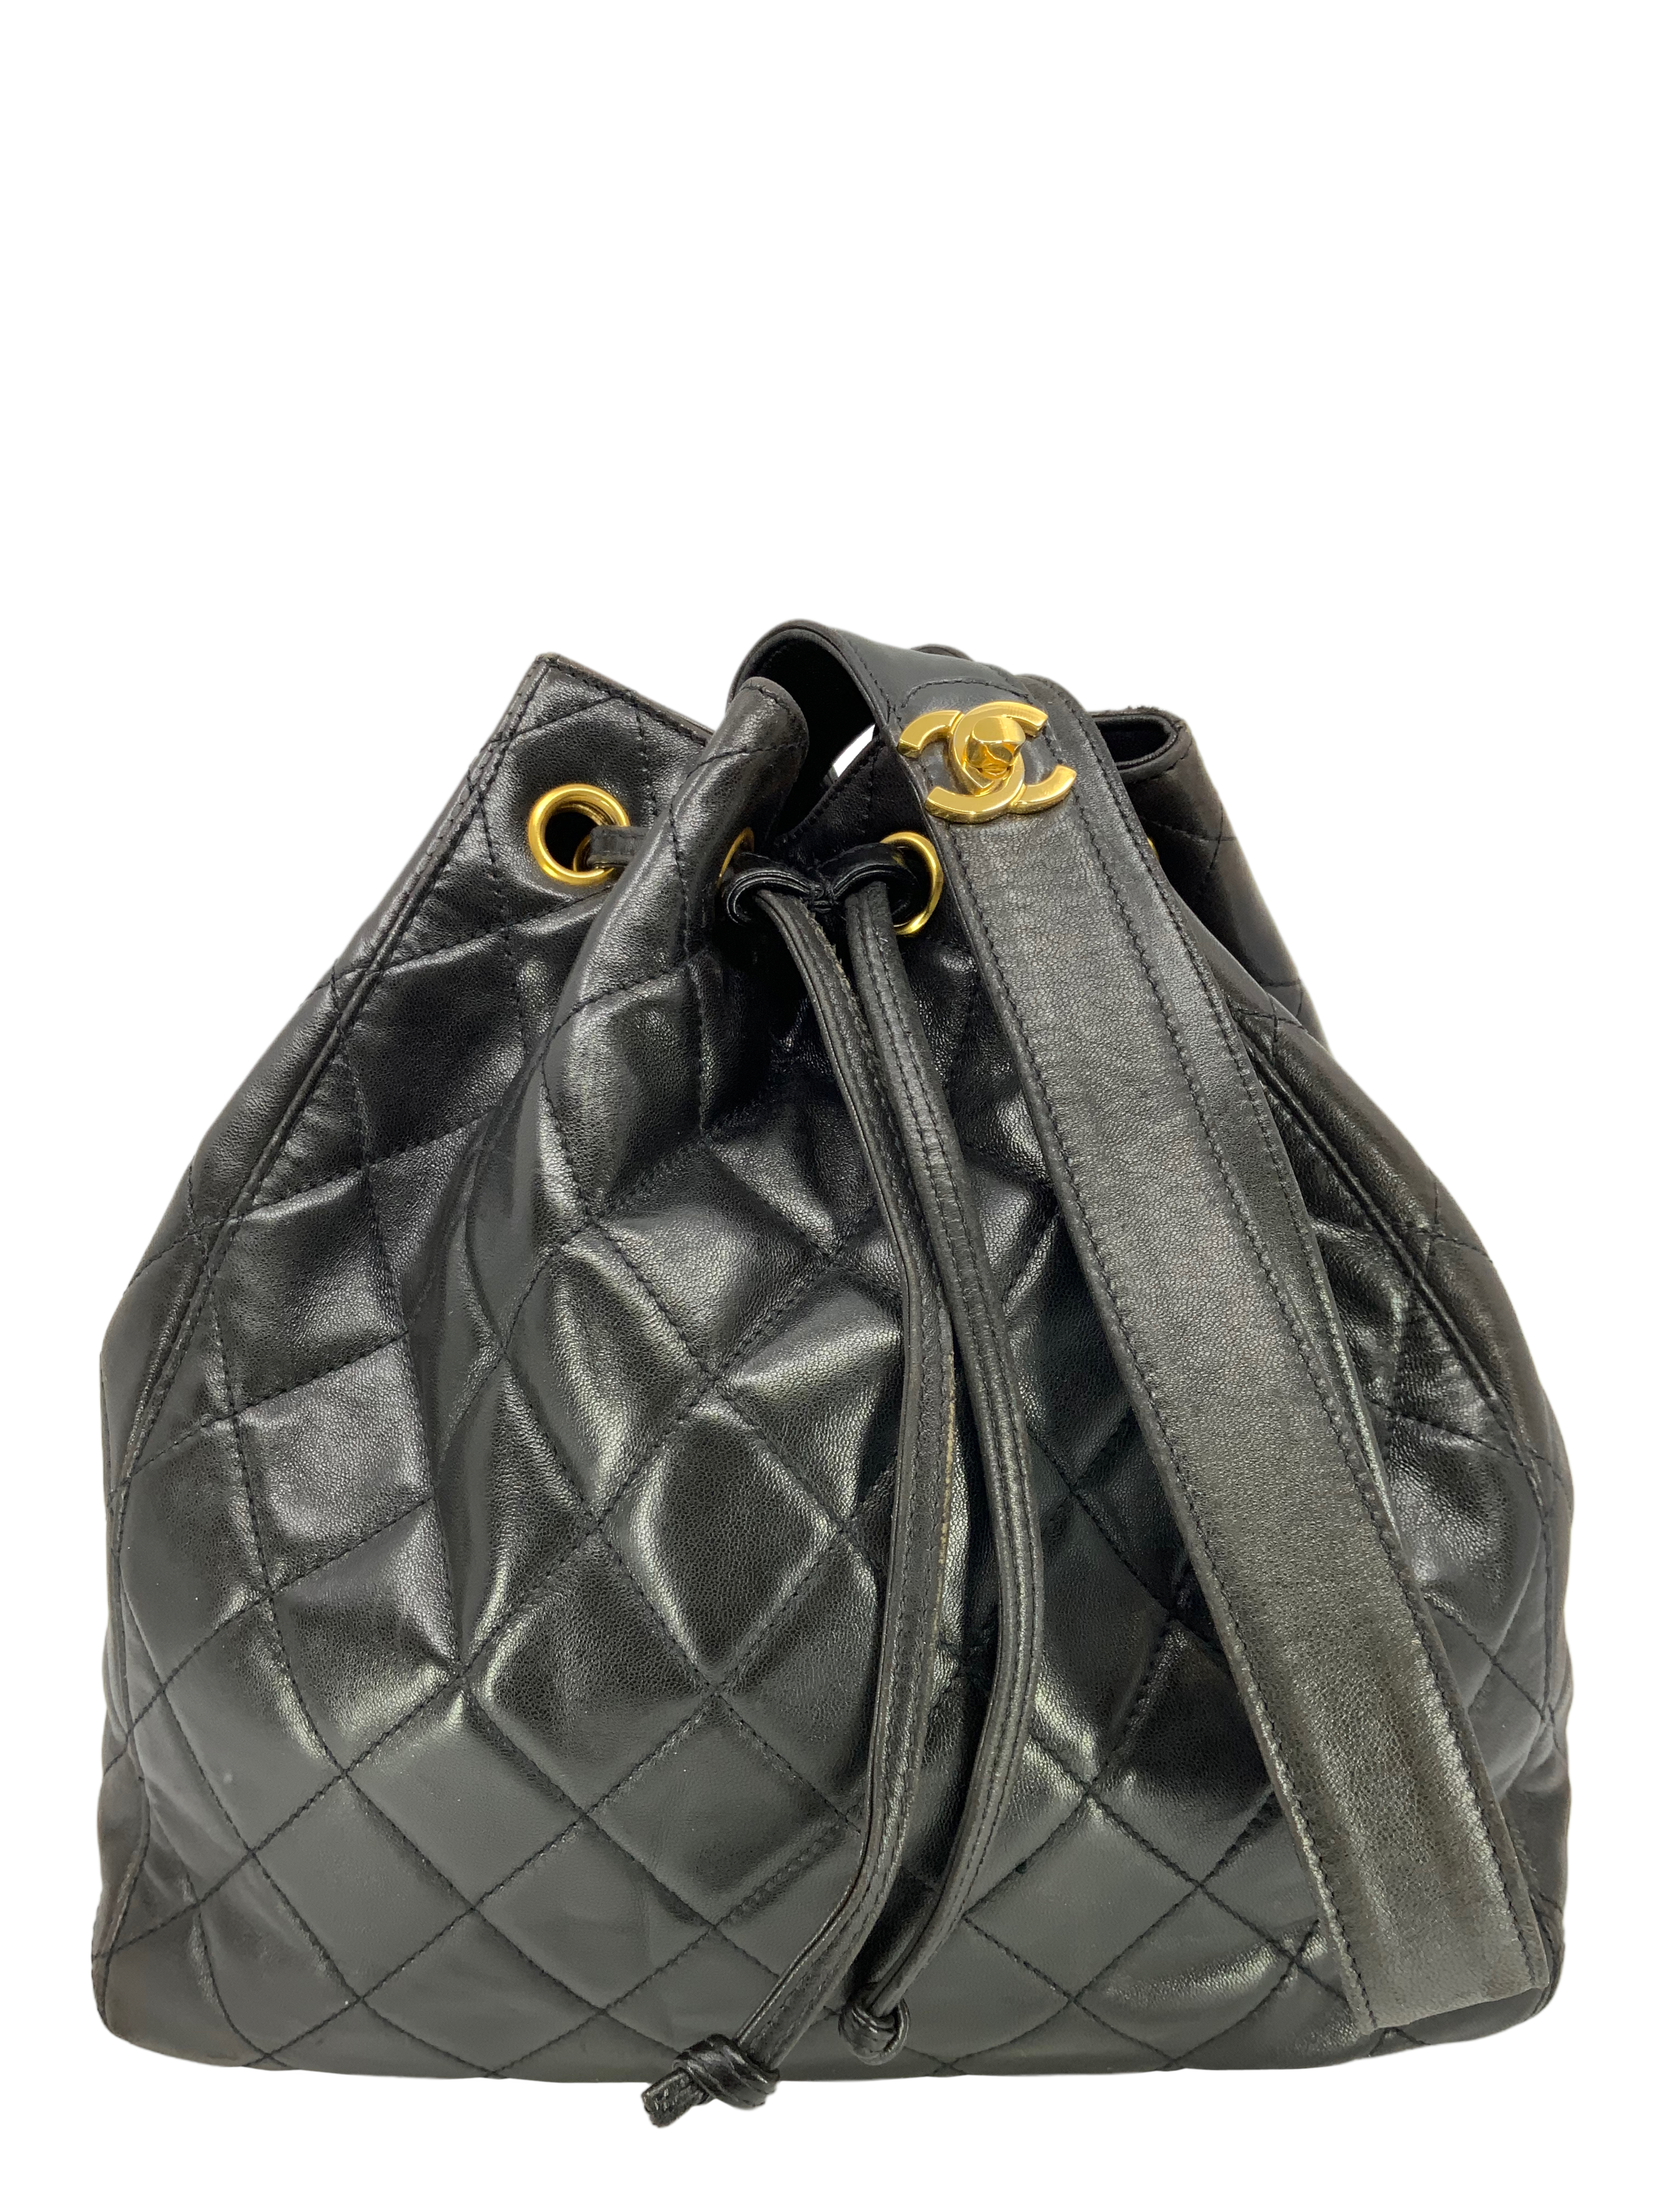 CHANEL Vintage Logo Bowler Bag Quilted Lambskin Black | 3D model